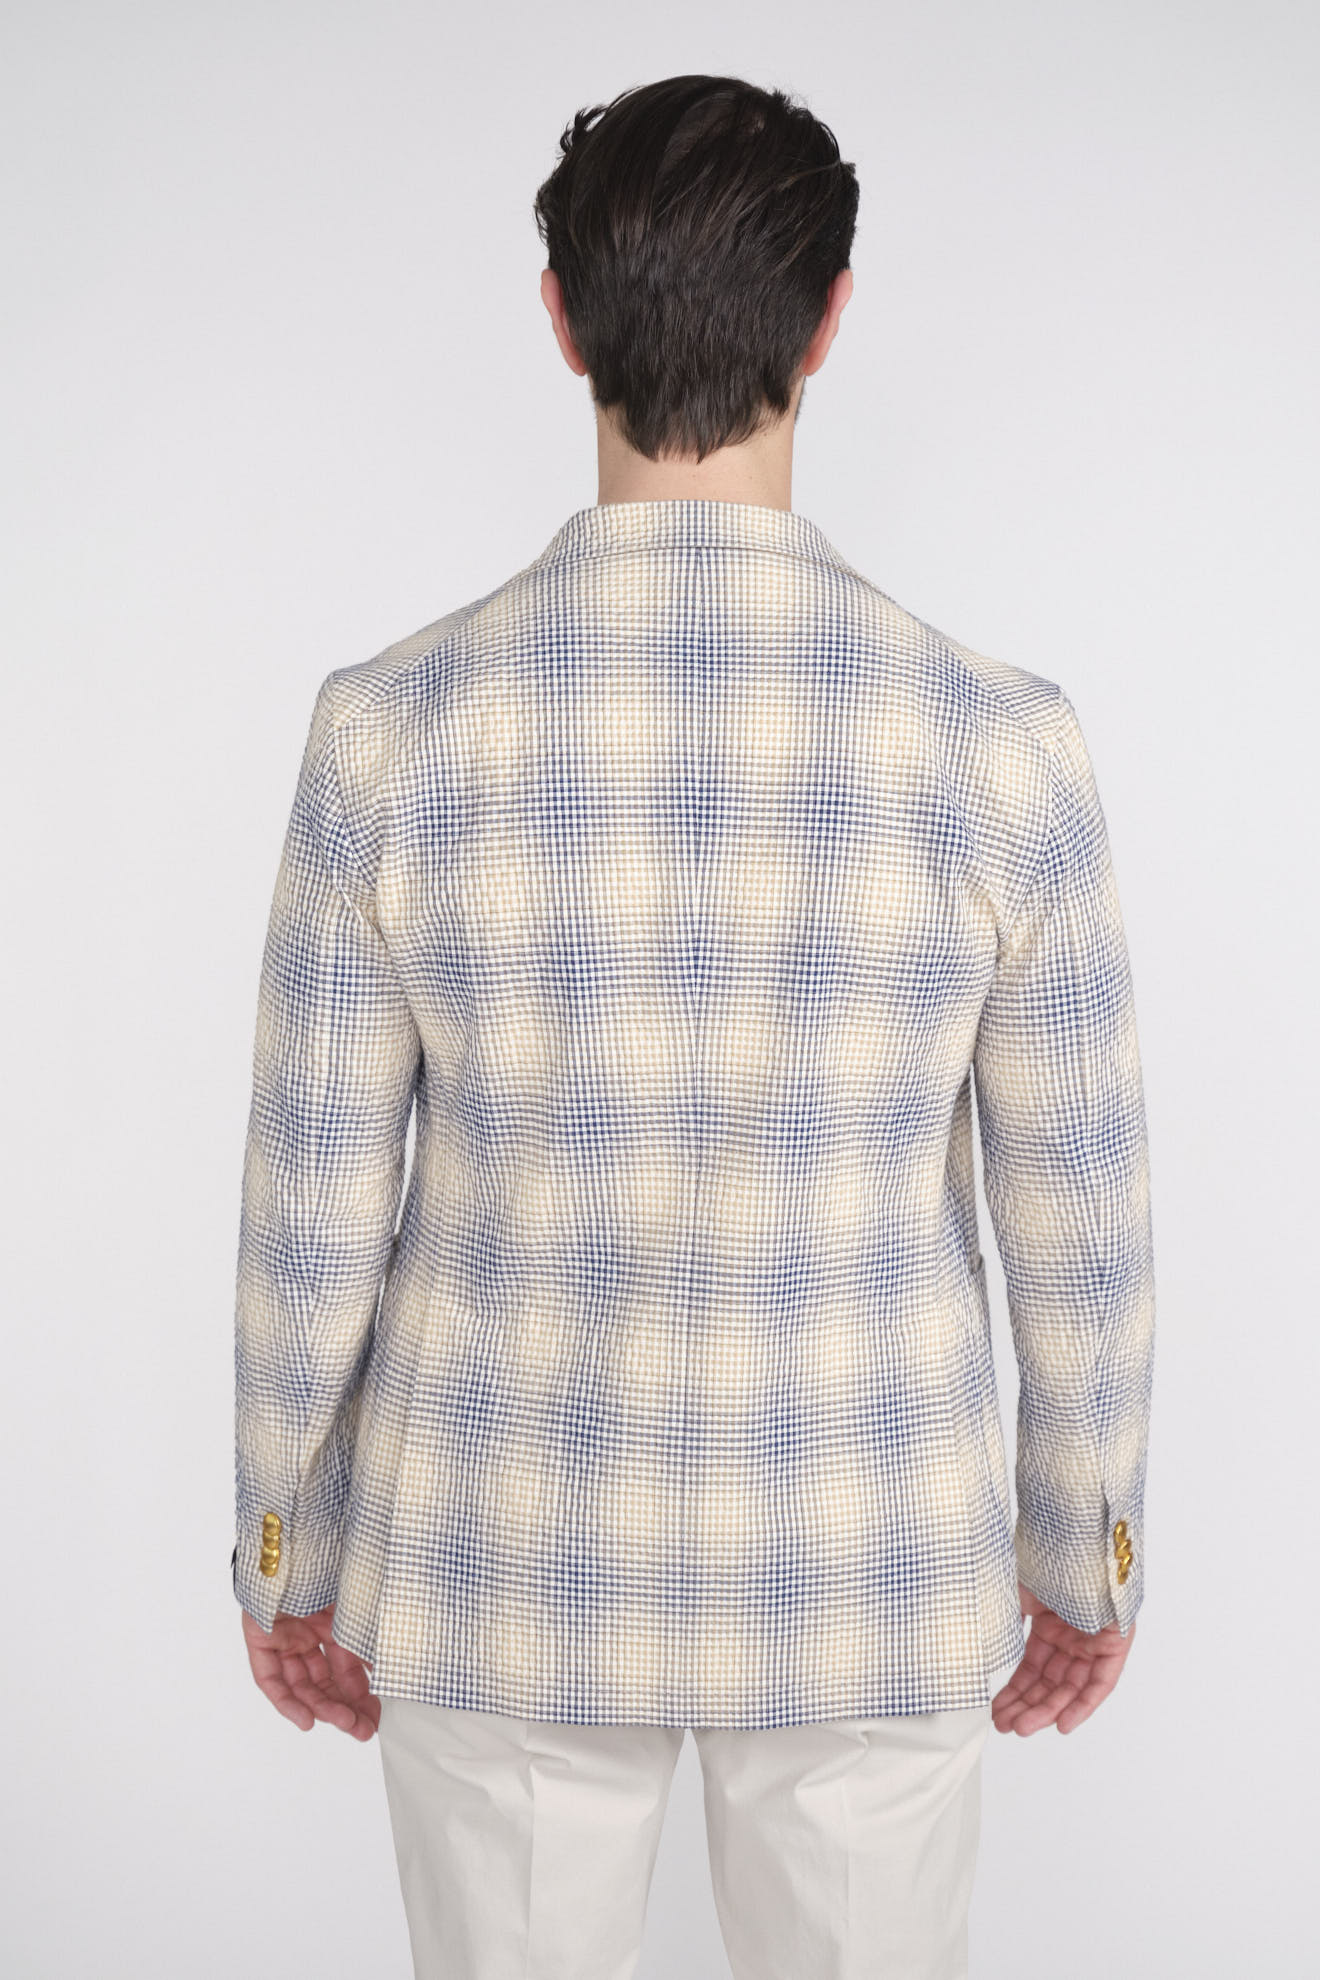 Tagliatore Cape Jacket – Locker geschnittene Jacke mit tief eingesetzten Ärmeln blau 48